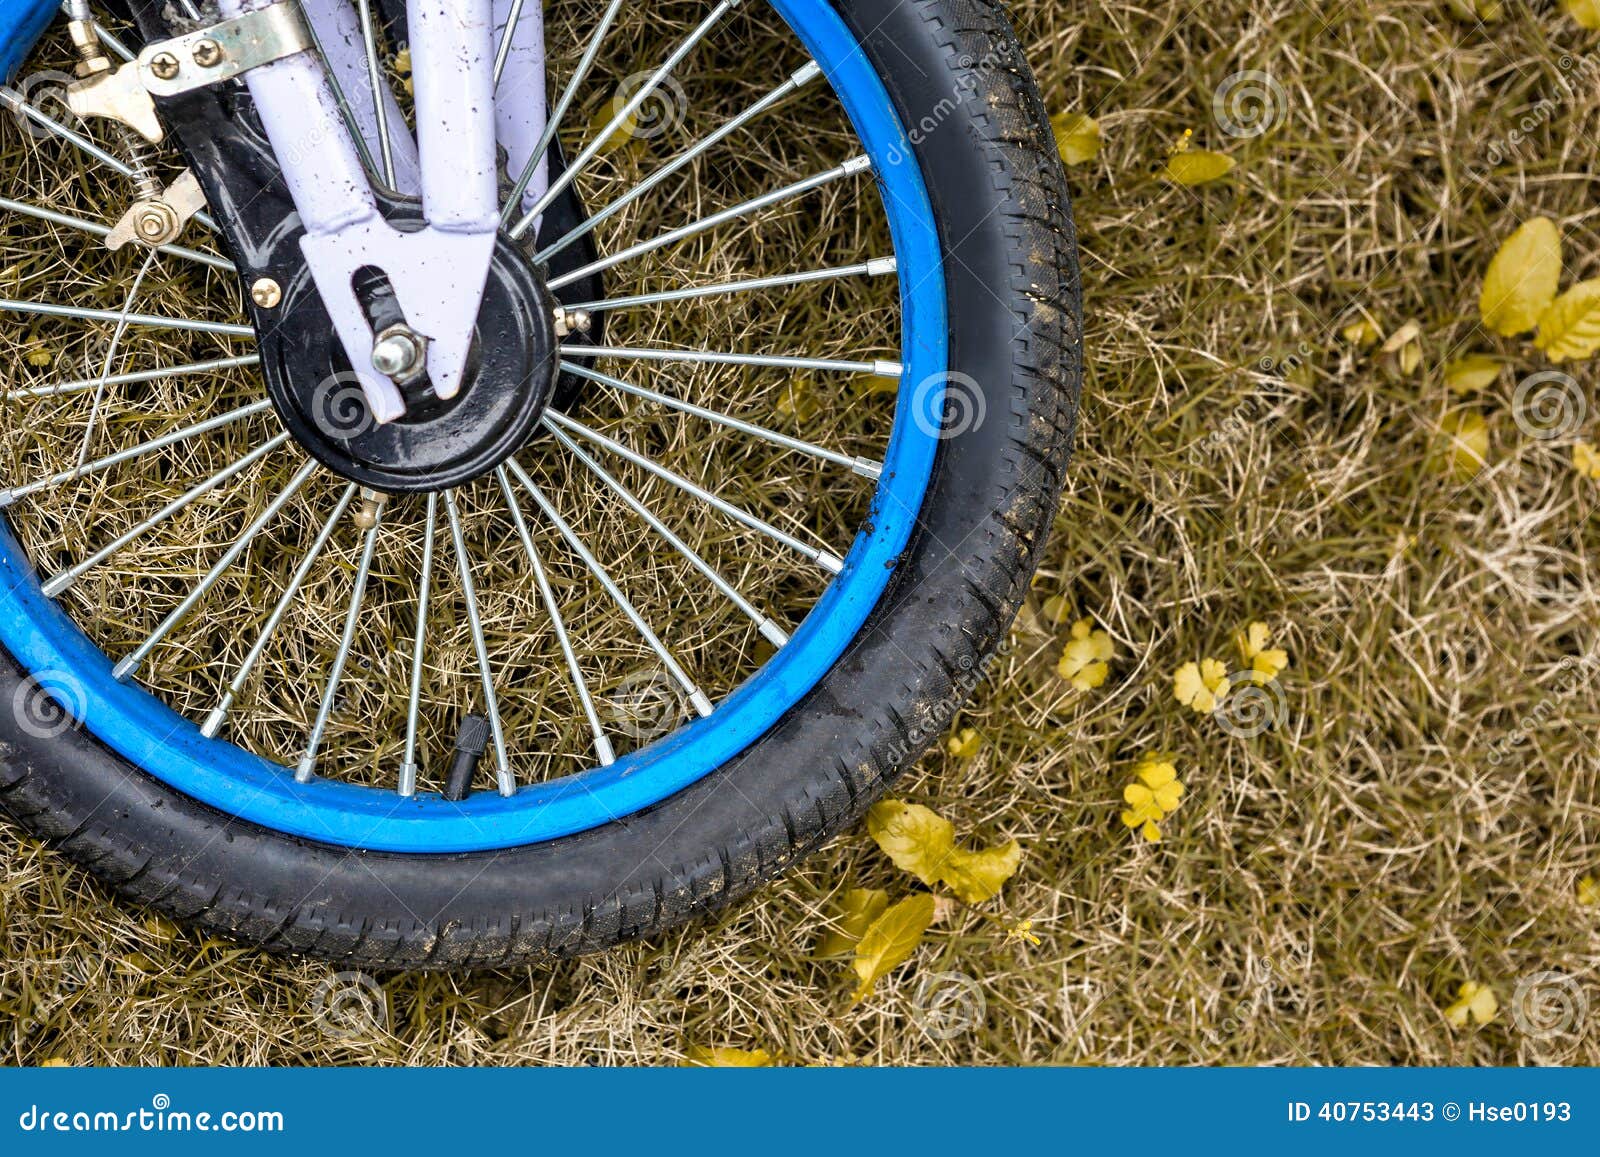 wheel of child bike